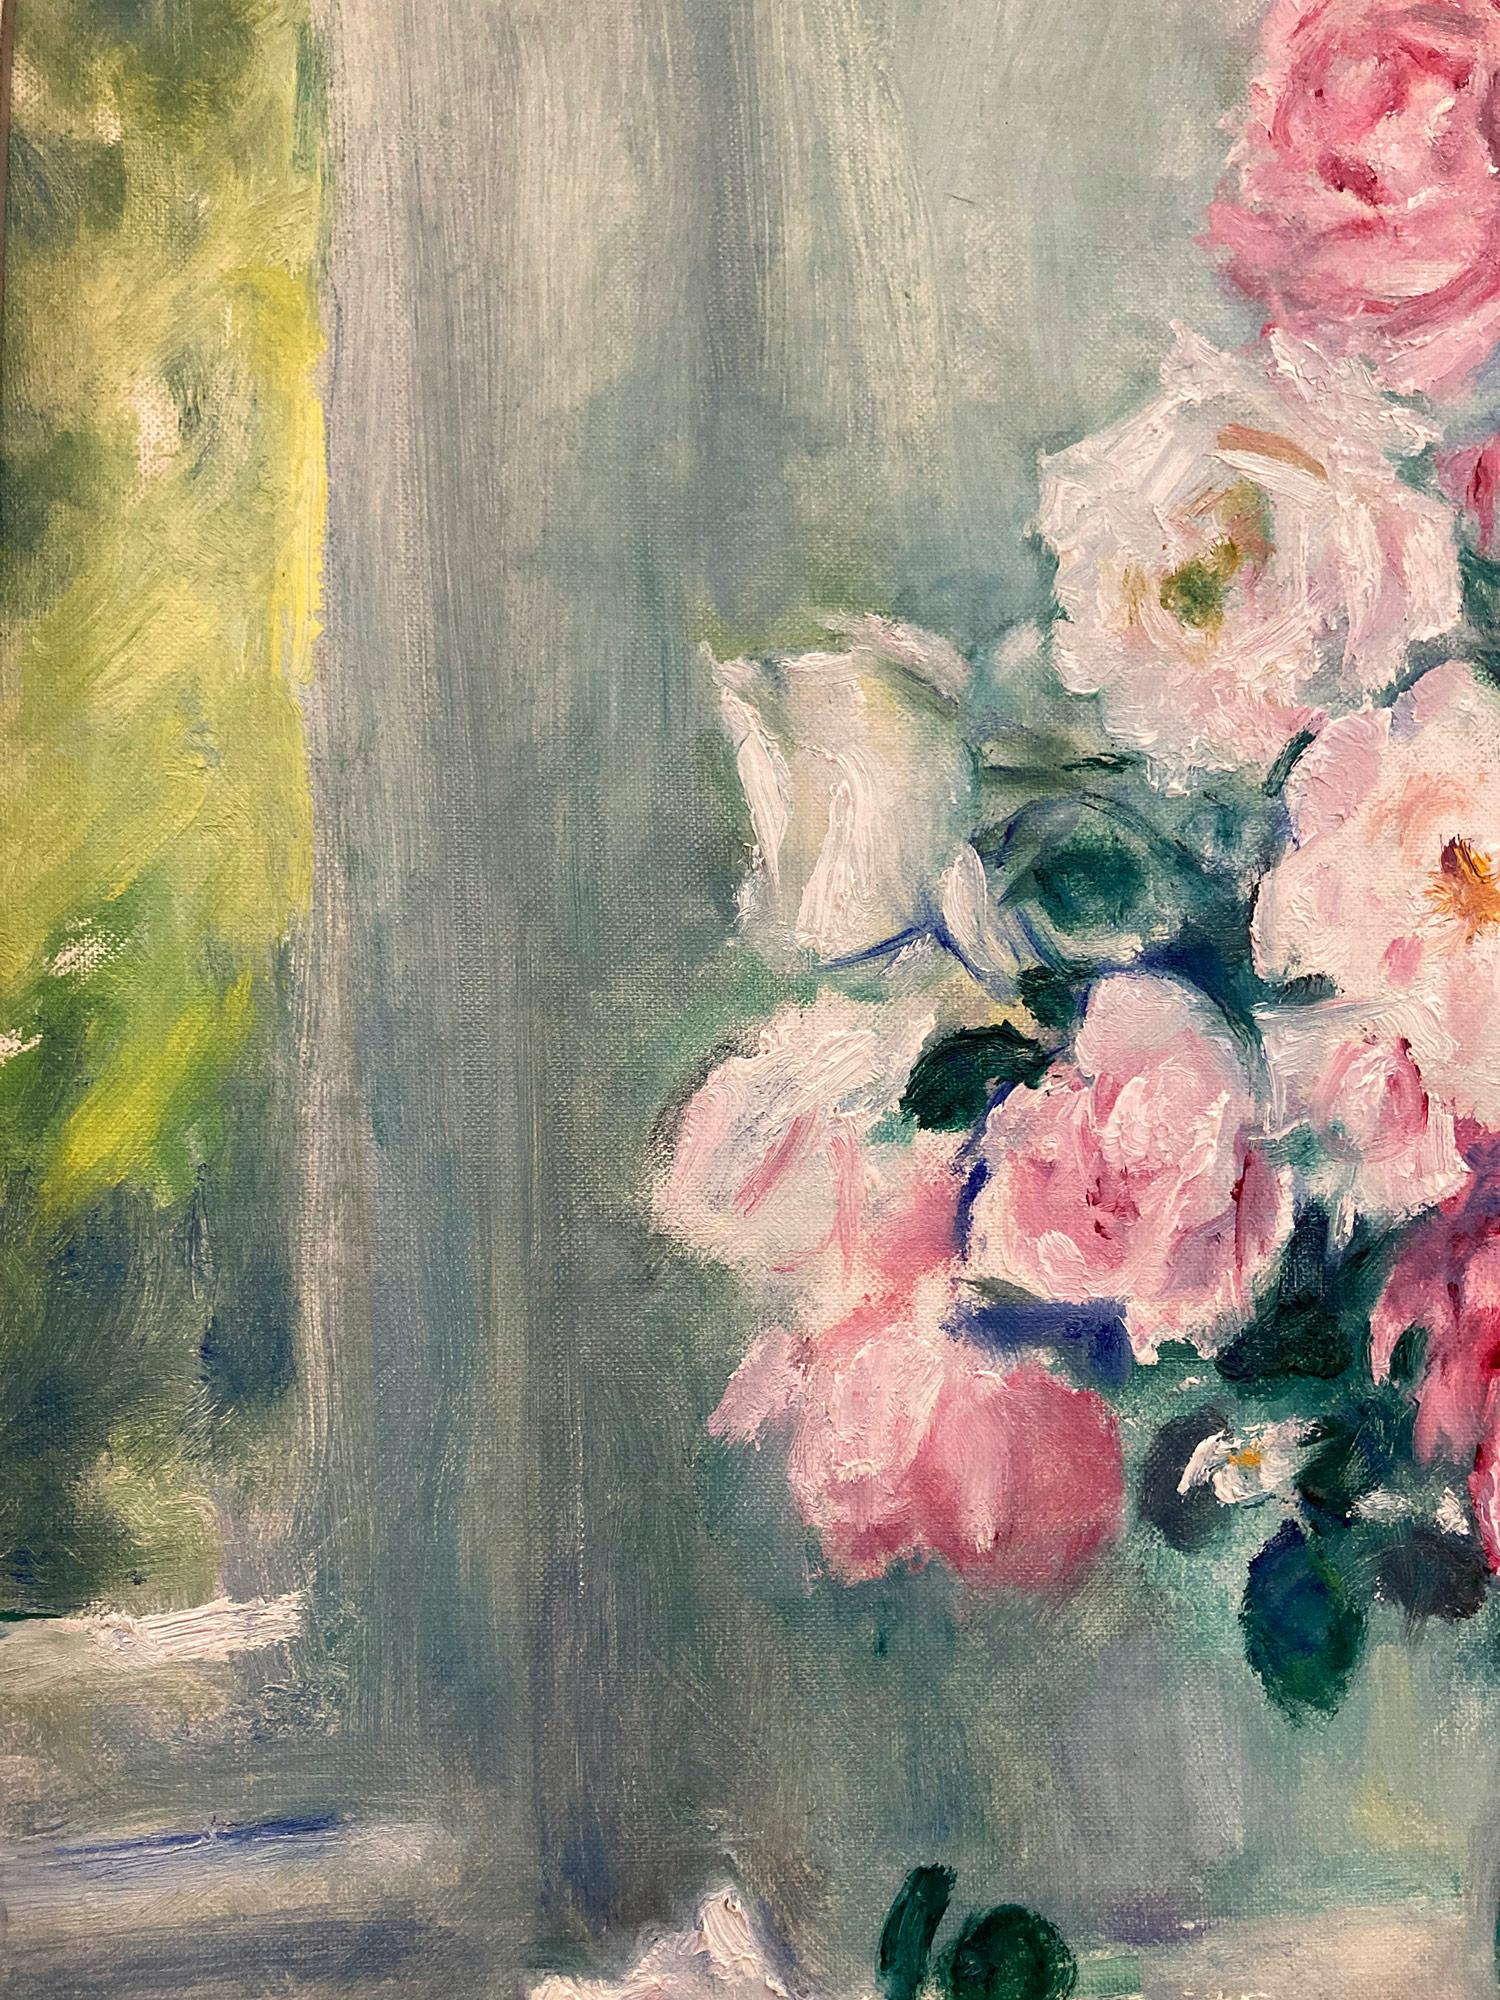 Représentation fantaisiste de Martha Walter d'une scène d'intérieur matinale avec des roses blanches et roses disposées dans un vase en verre sur une table, et des fruits sur une assiette décorée. À l'arrière-plan, la fenêtre donnant sur le jardin,